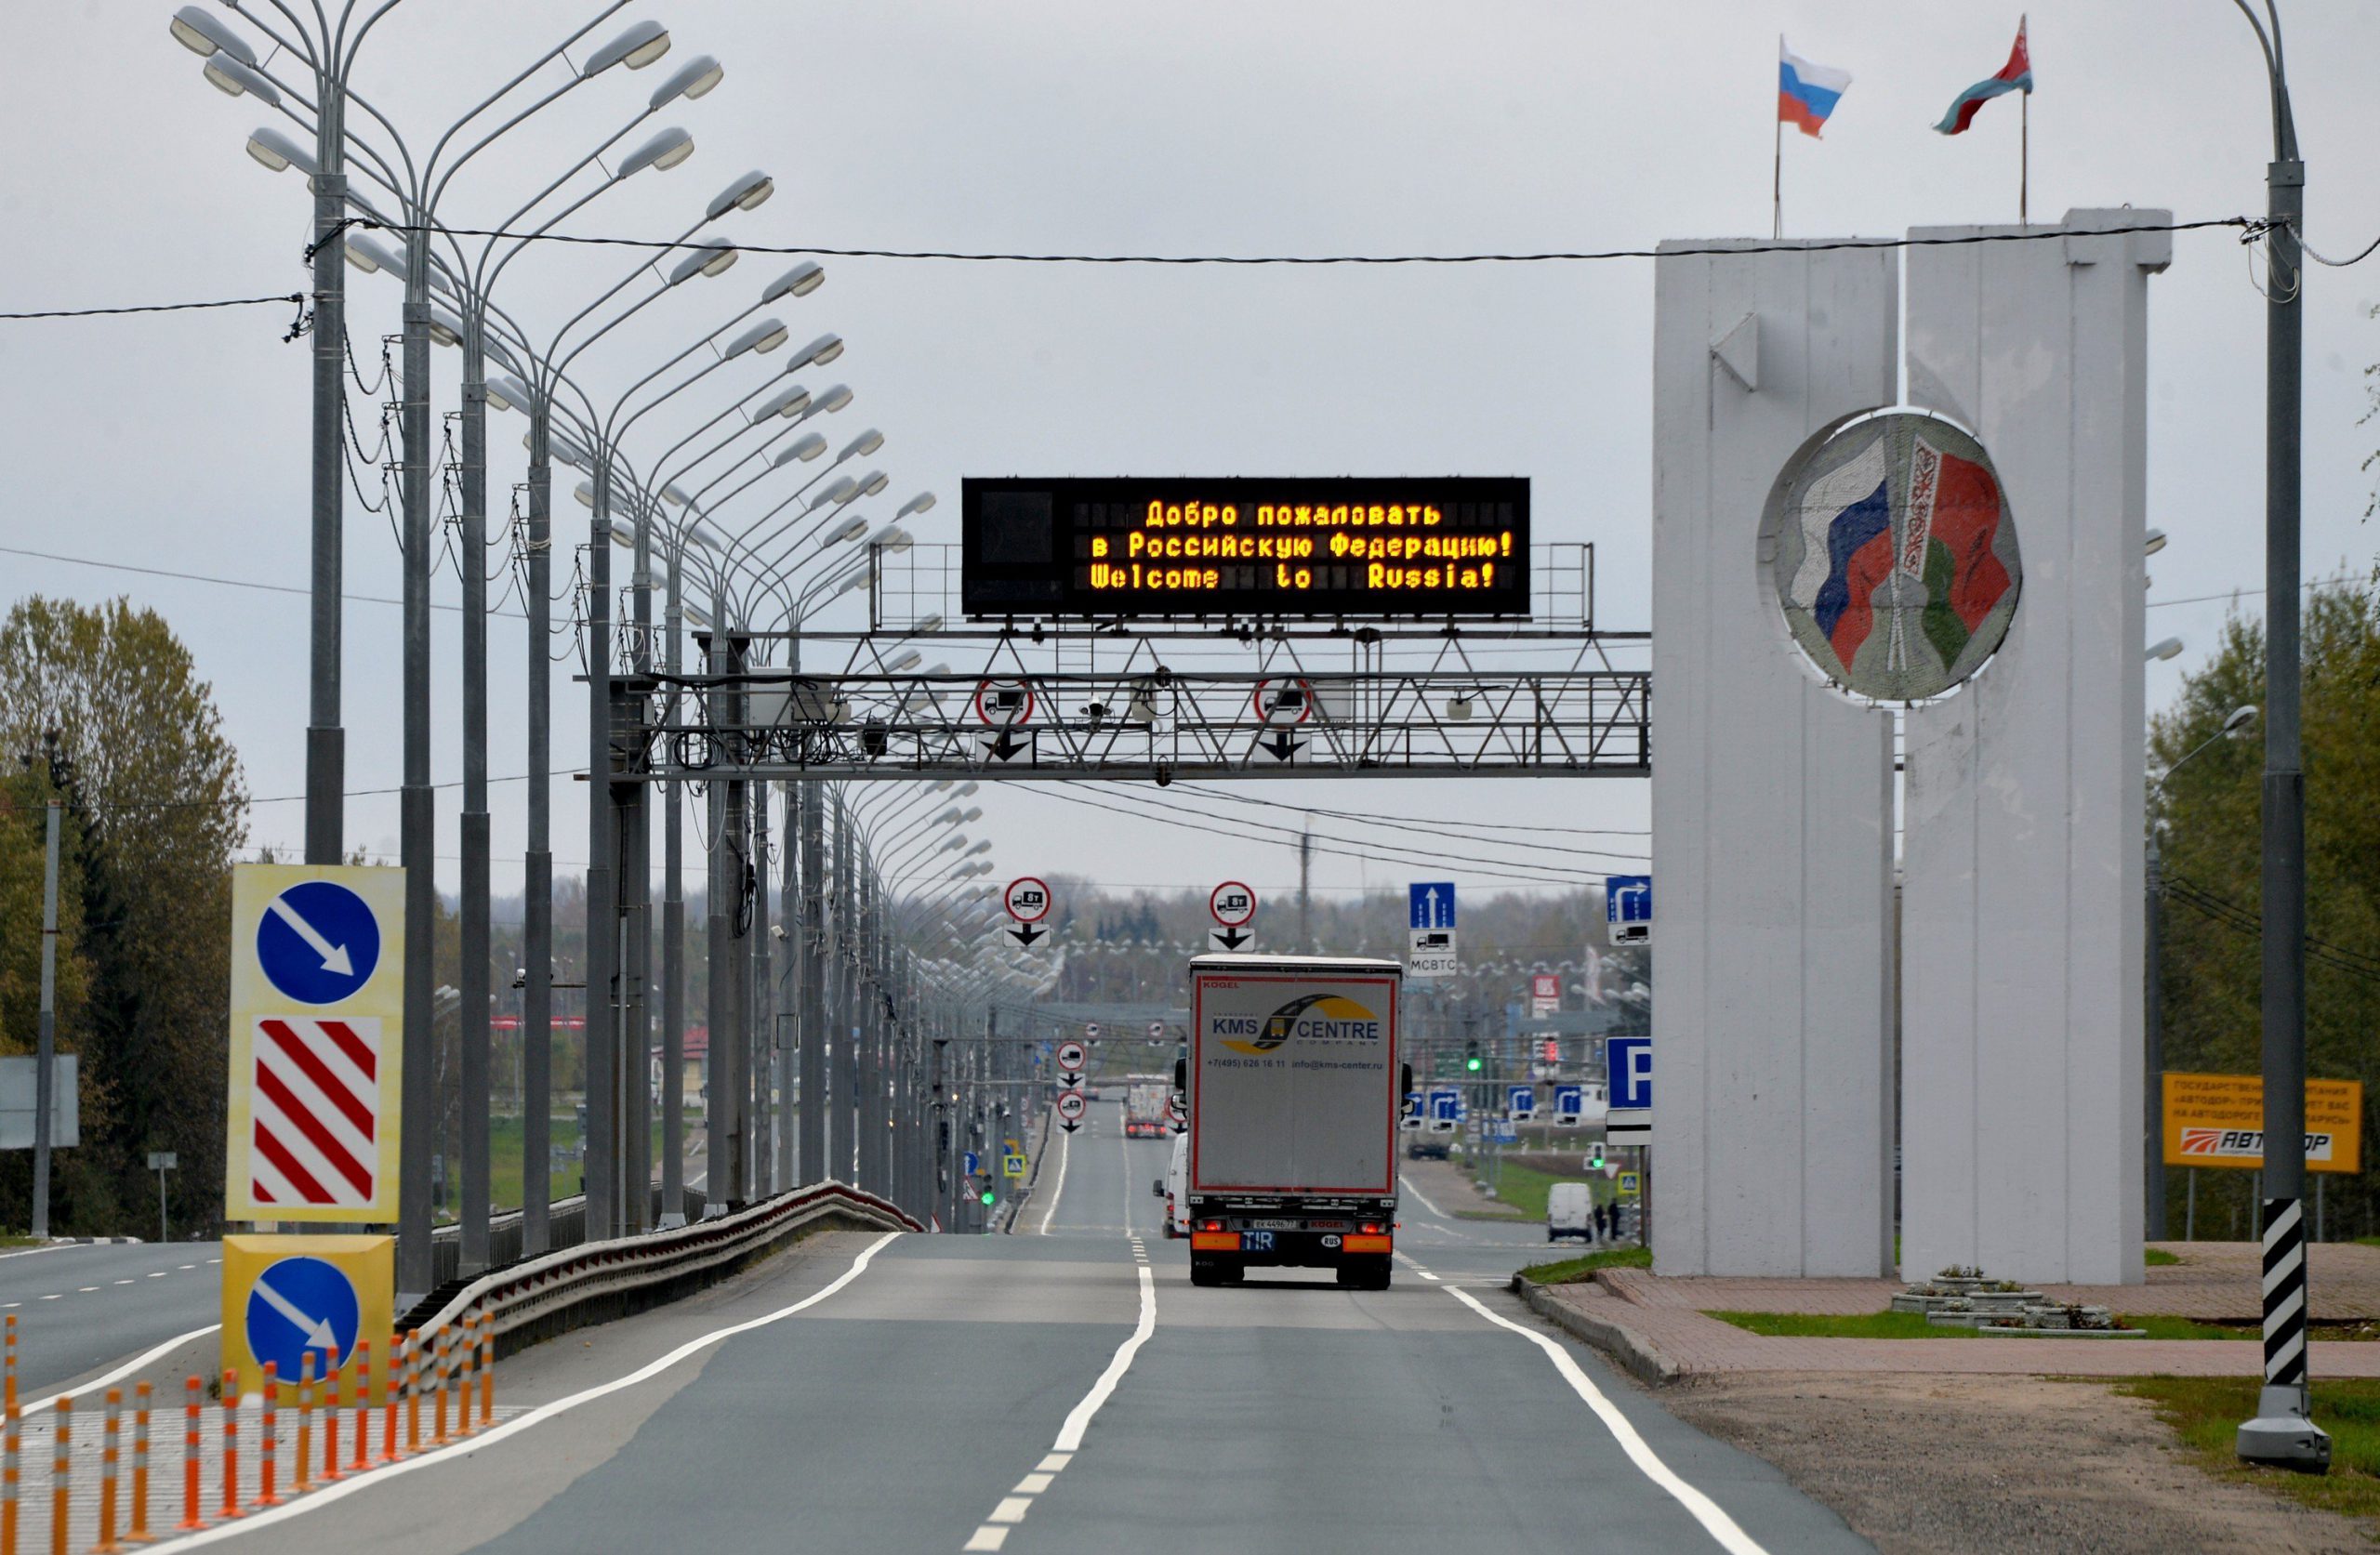 Сохранение прозрачности беларуско-российской границы под вопросом